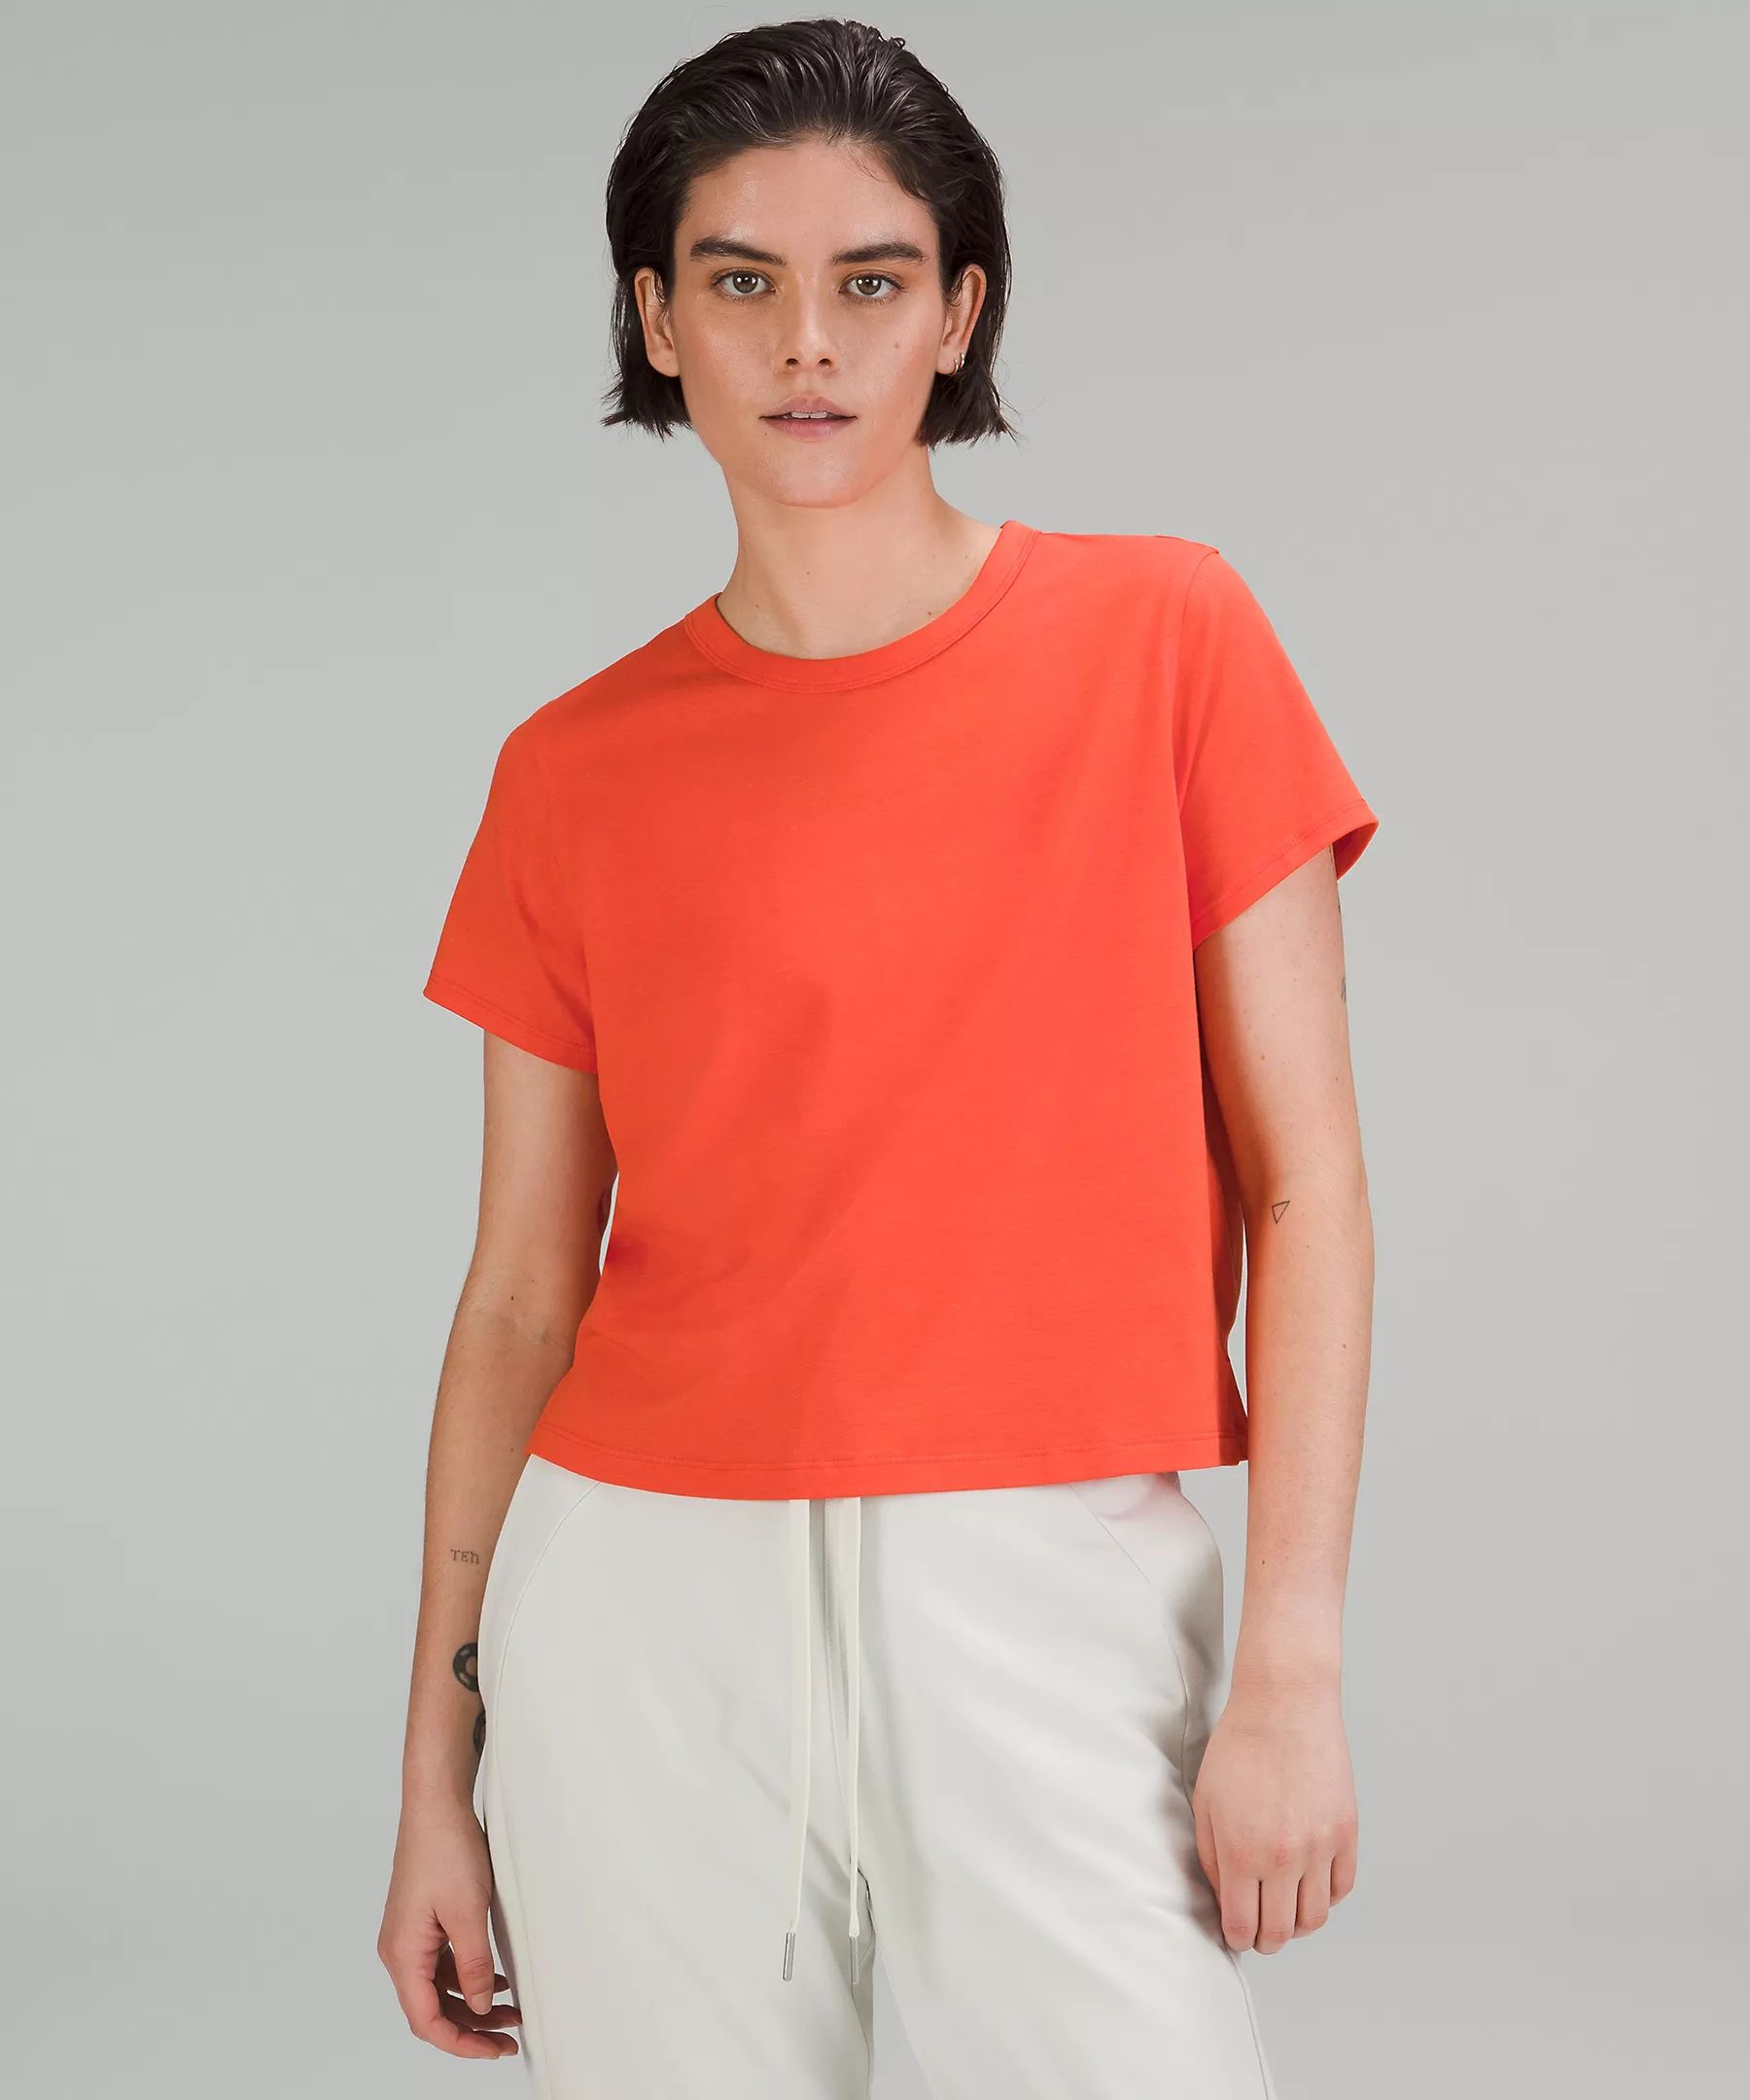 Classic-Fit Cotton-Blend T-Shirt | Lululemon (US)